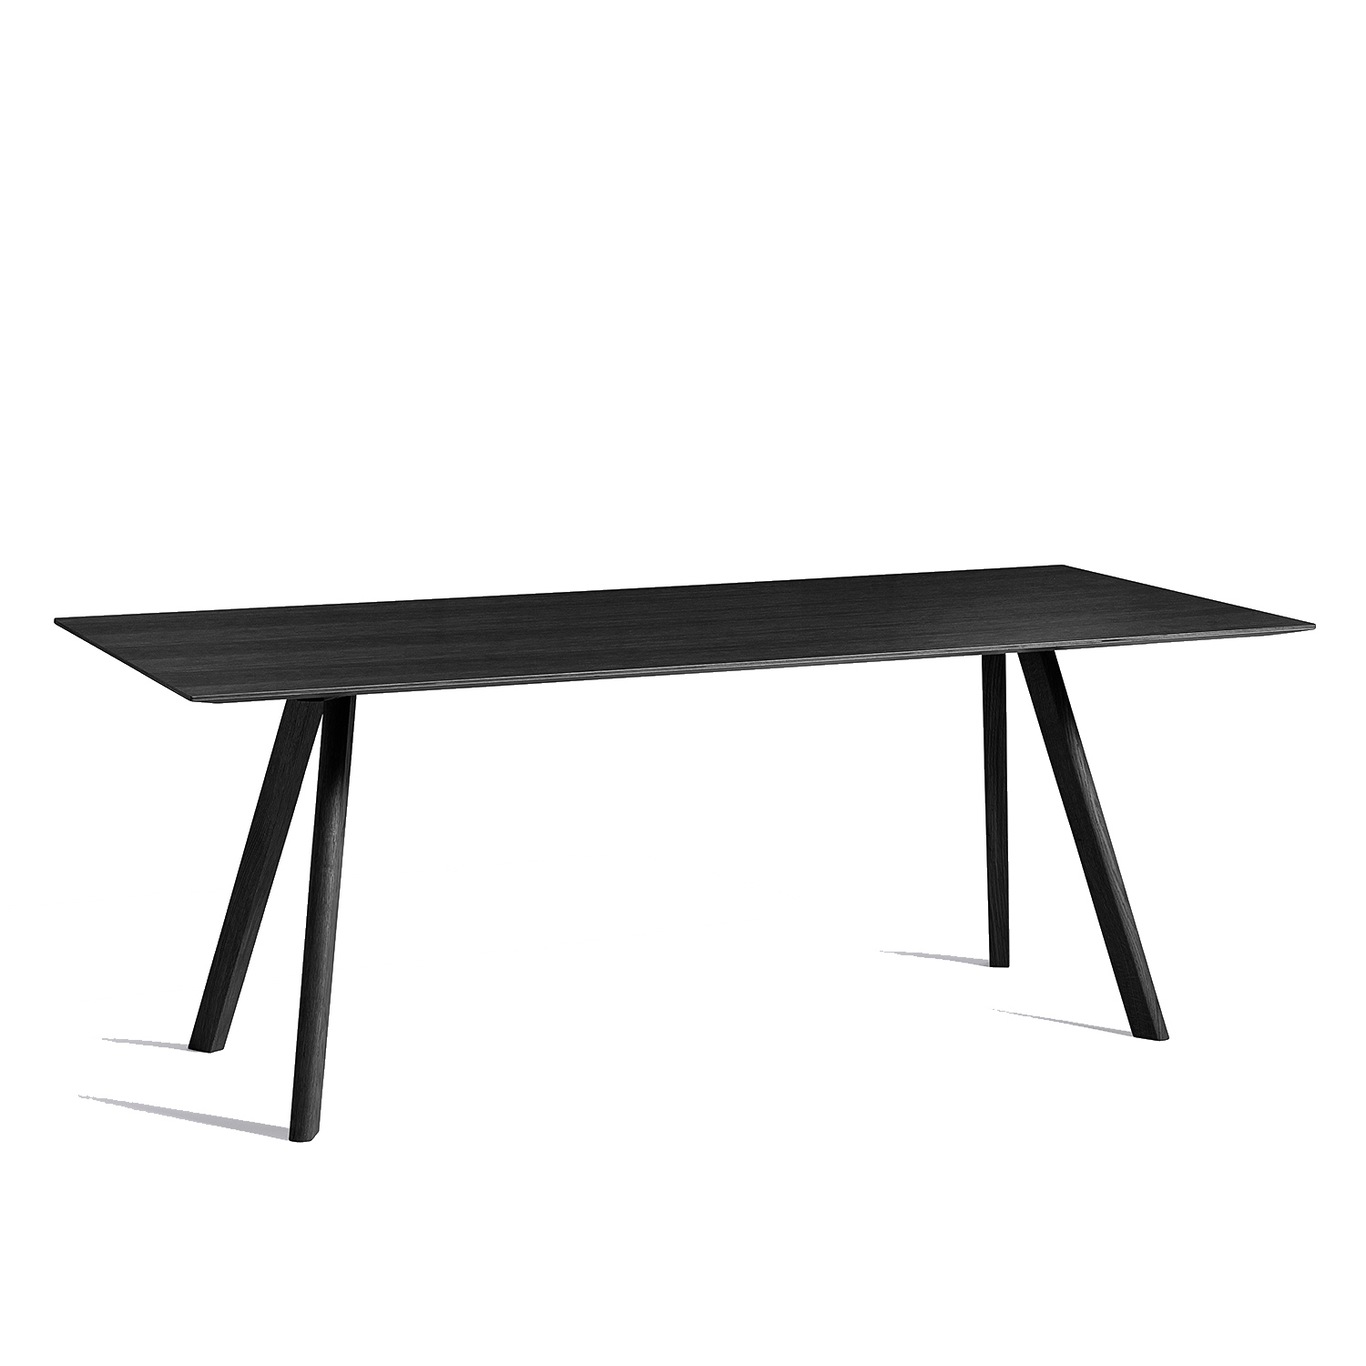 CPH30 Tisch 90x200 cm, Schwarz Mit Wasserlack Behandelte Eiche